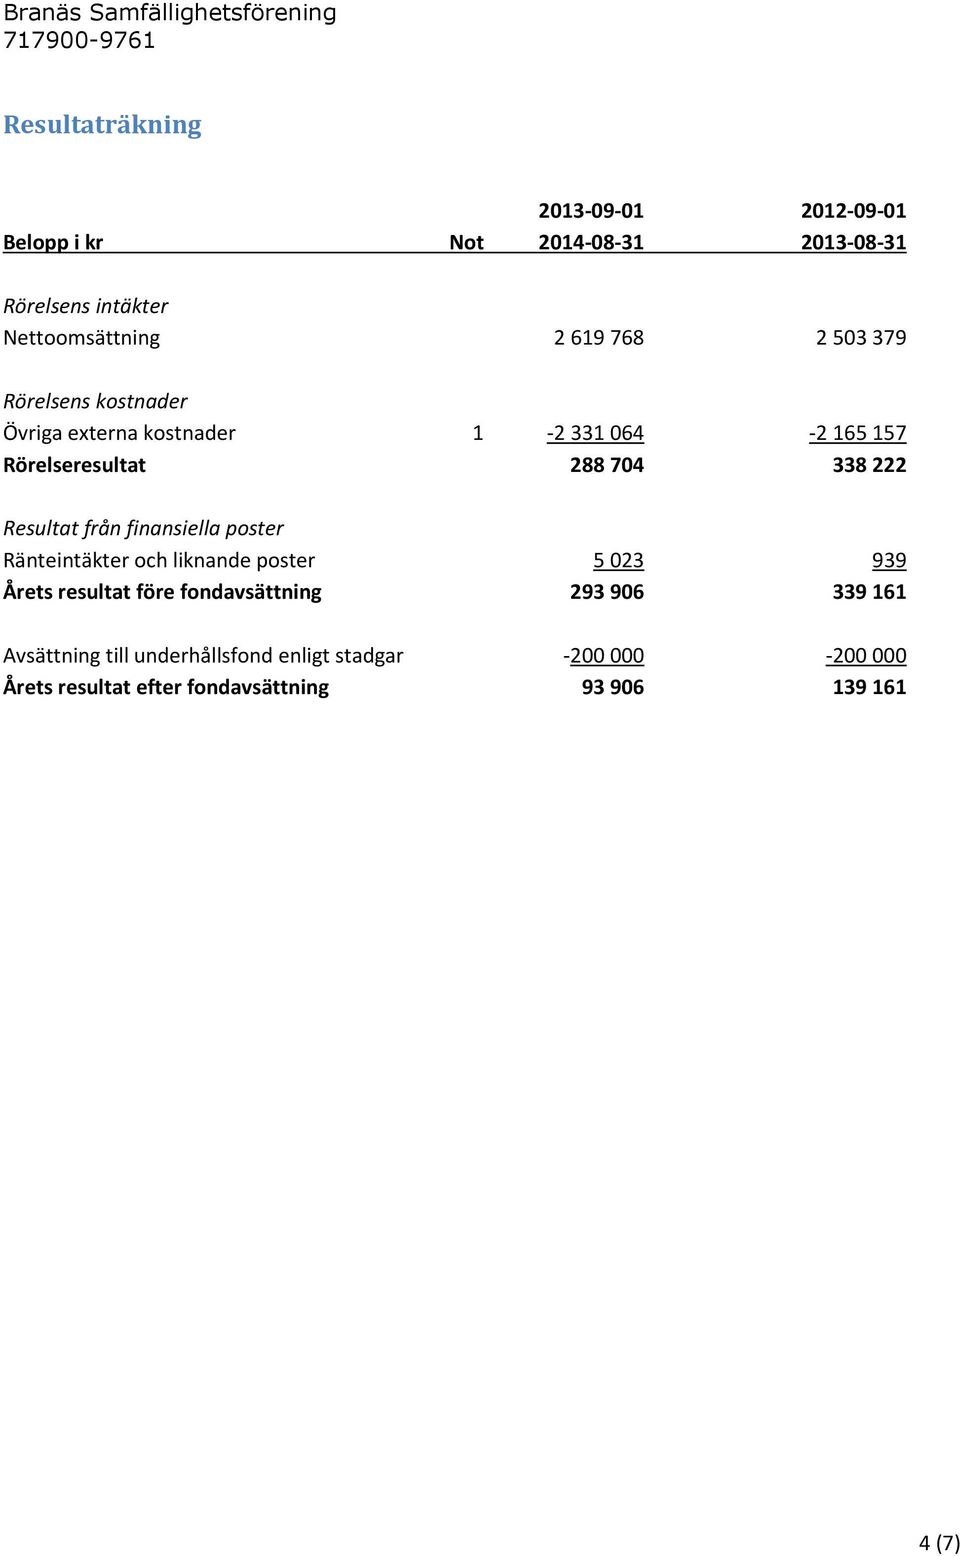 Resultat från finansiella poster Ränteintäkter och liknande poster 5 023 939 Årets resultat före fondavsättning 293 906